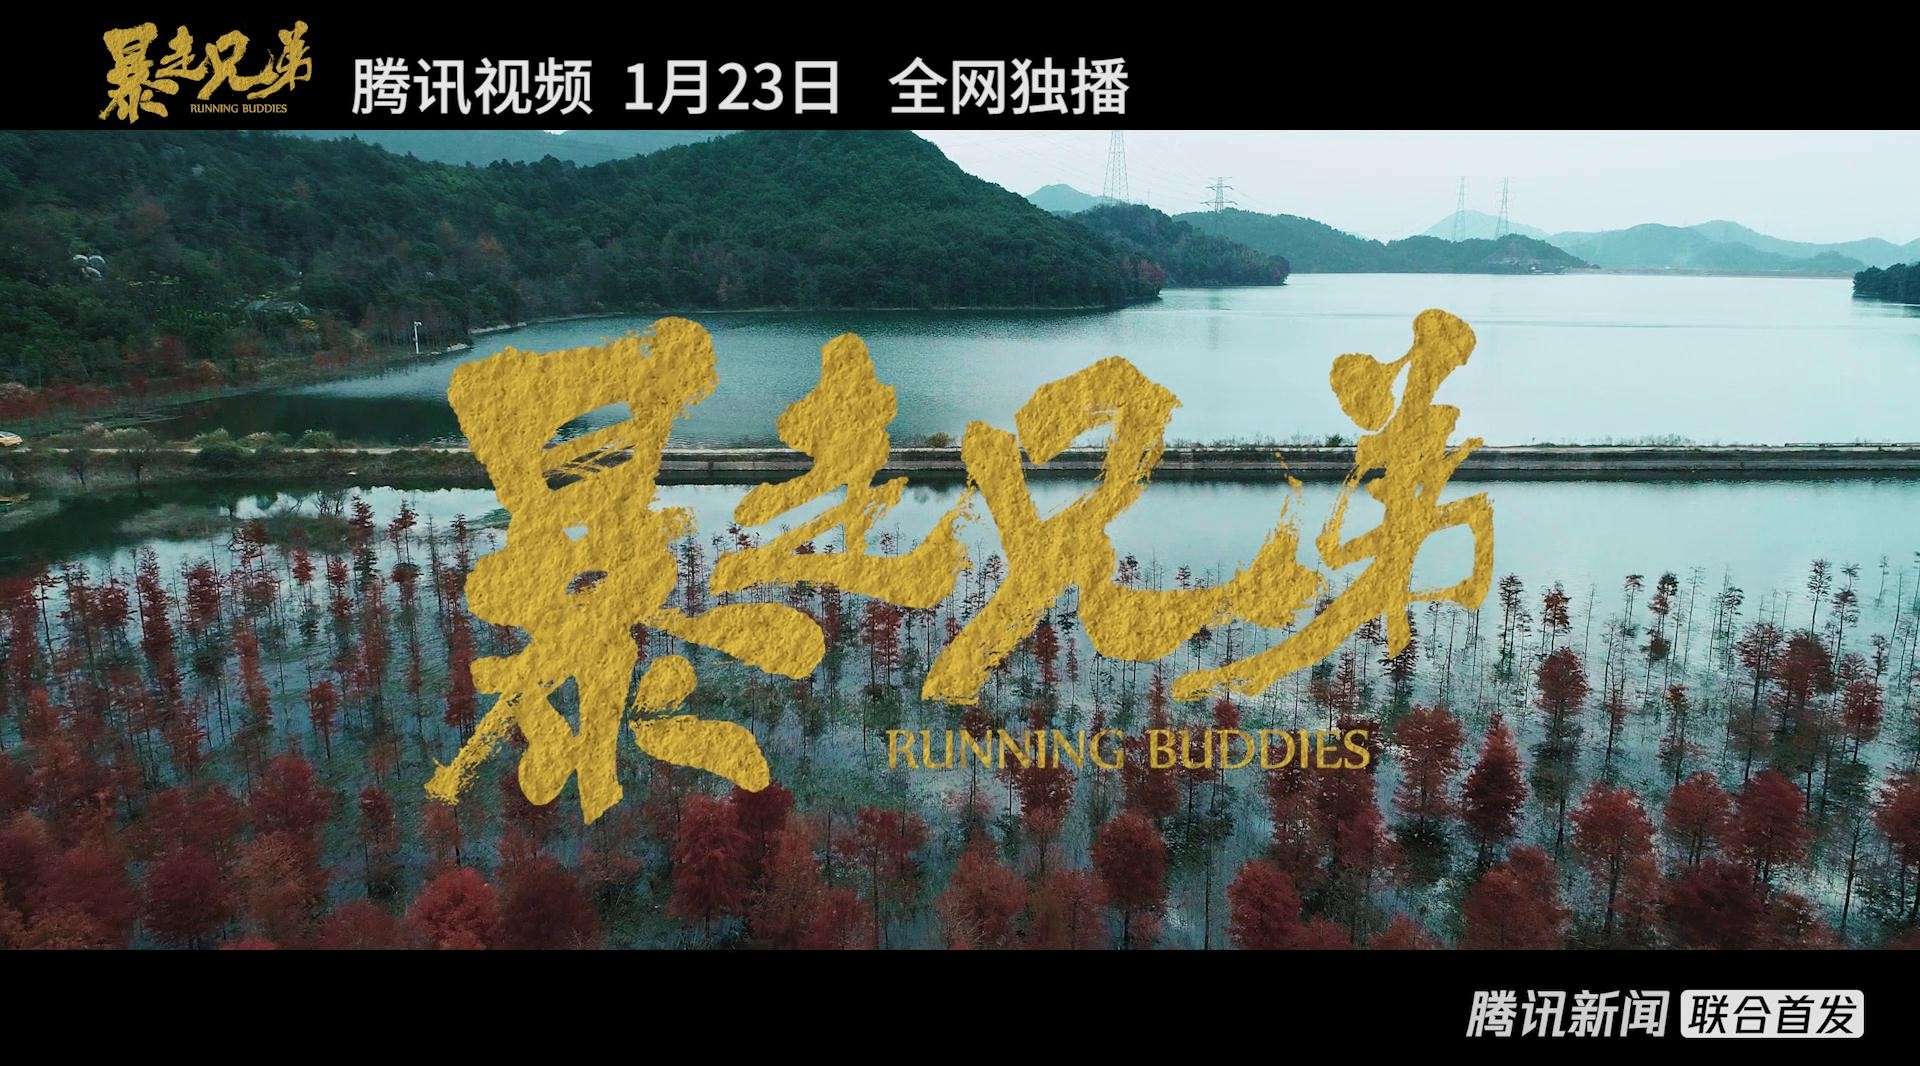 电影《暴走兄弟》导演版预告片